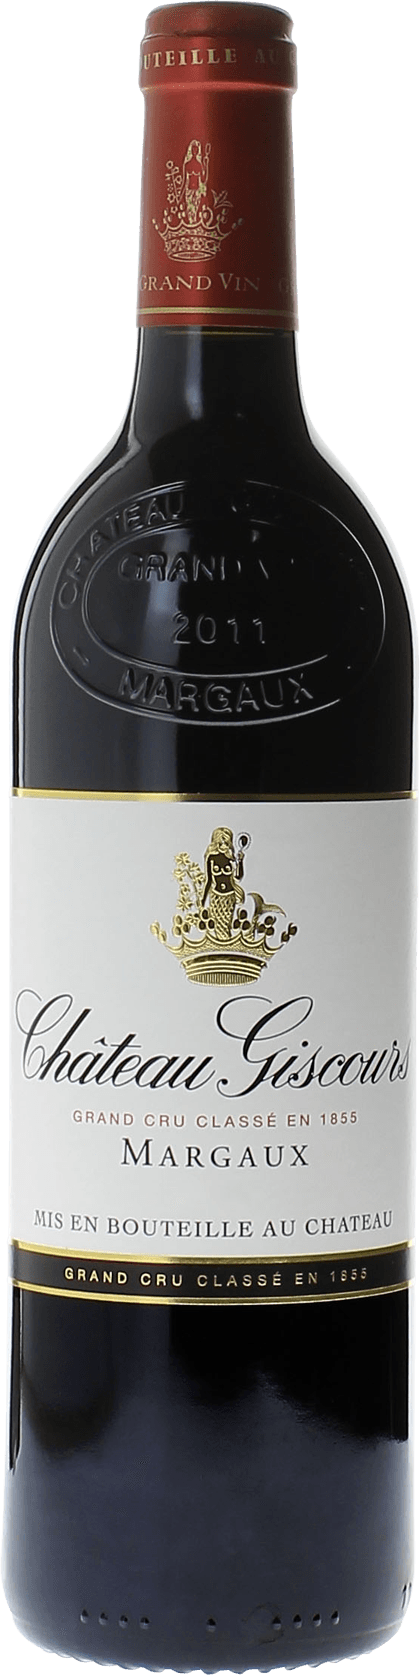 Giscours 1989 3me Grand cru class Margaux, Bordeaux rouge